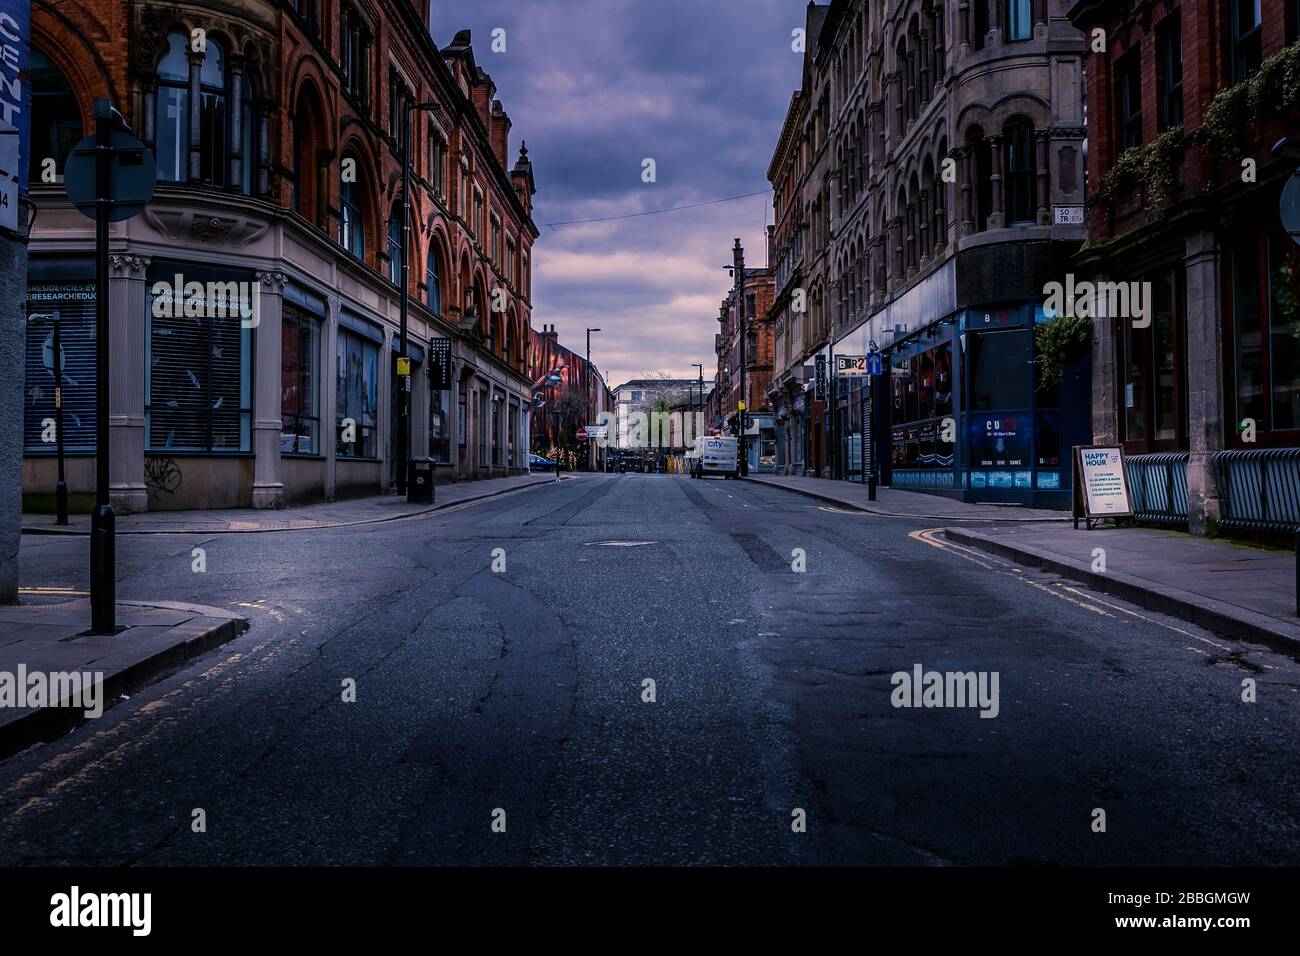 Northern Quarter, Manchester, Royaume-Uni. Rues vides pendant l'éclosion de Coronavirus, mars 2020. Banque D'Images